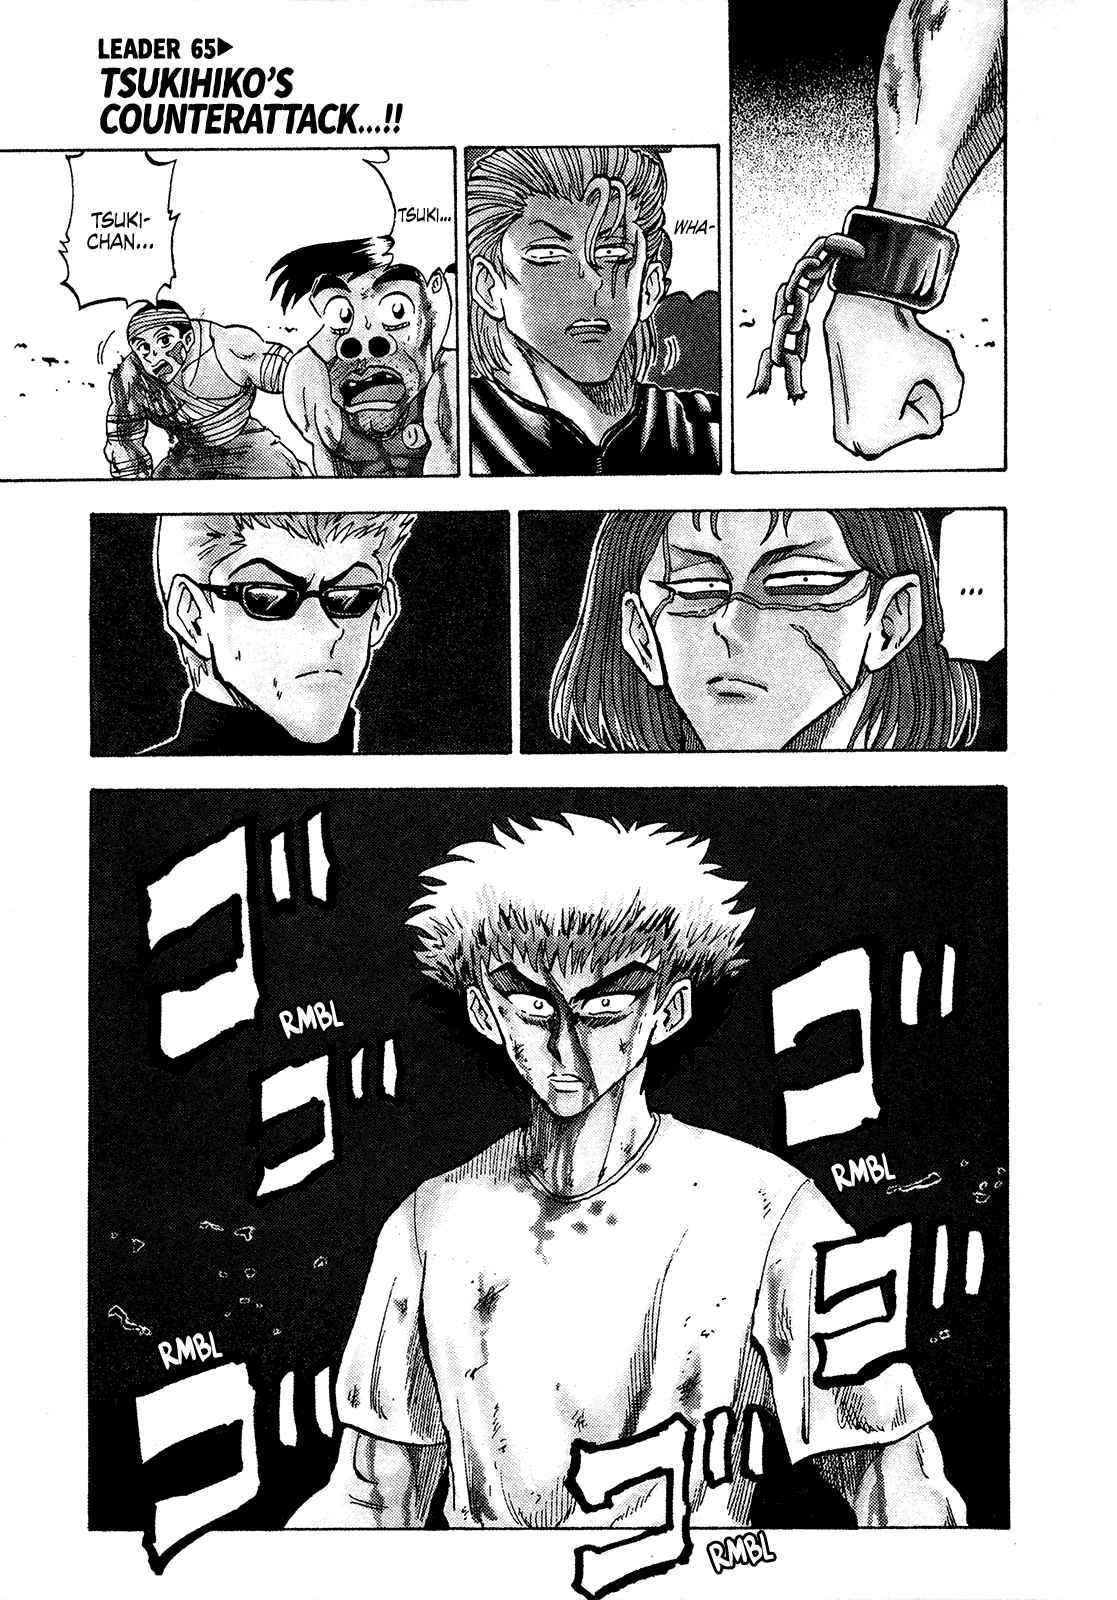 Seikimatsu Leader Den Takeshi! Vol. 4 Ch. 165 Tsukihiko's Counterattack!!